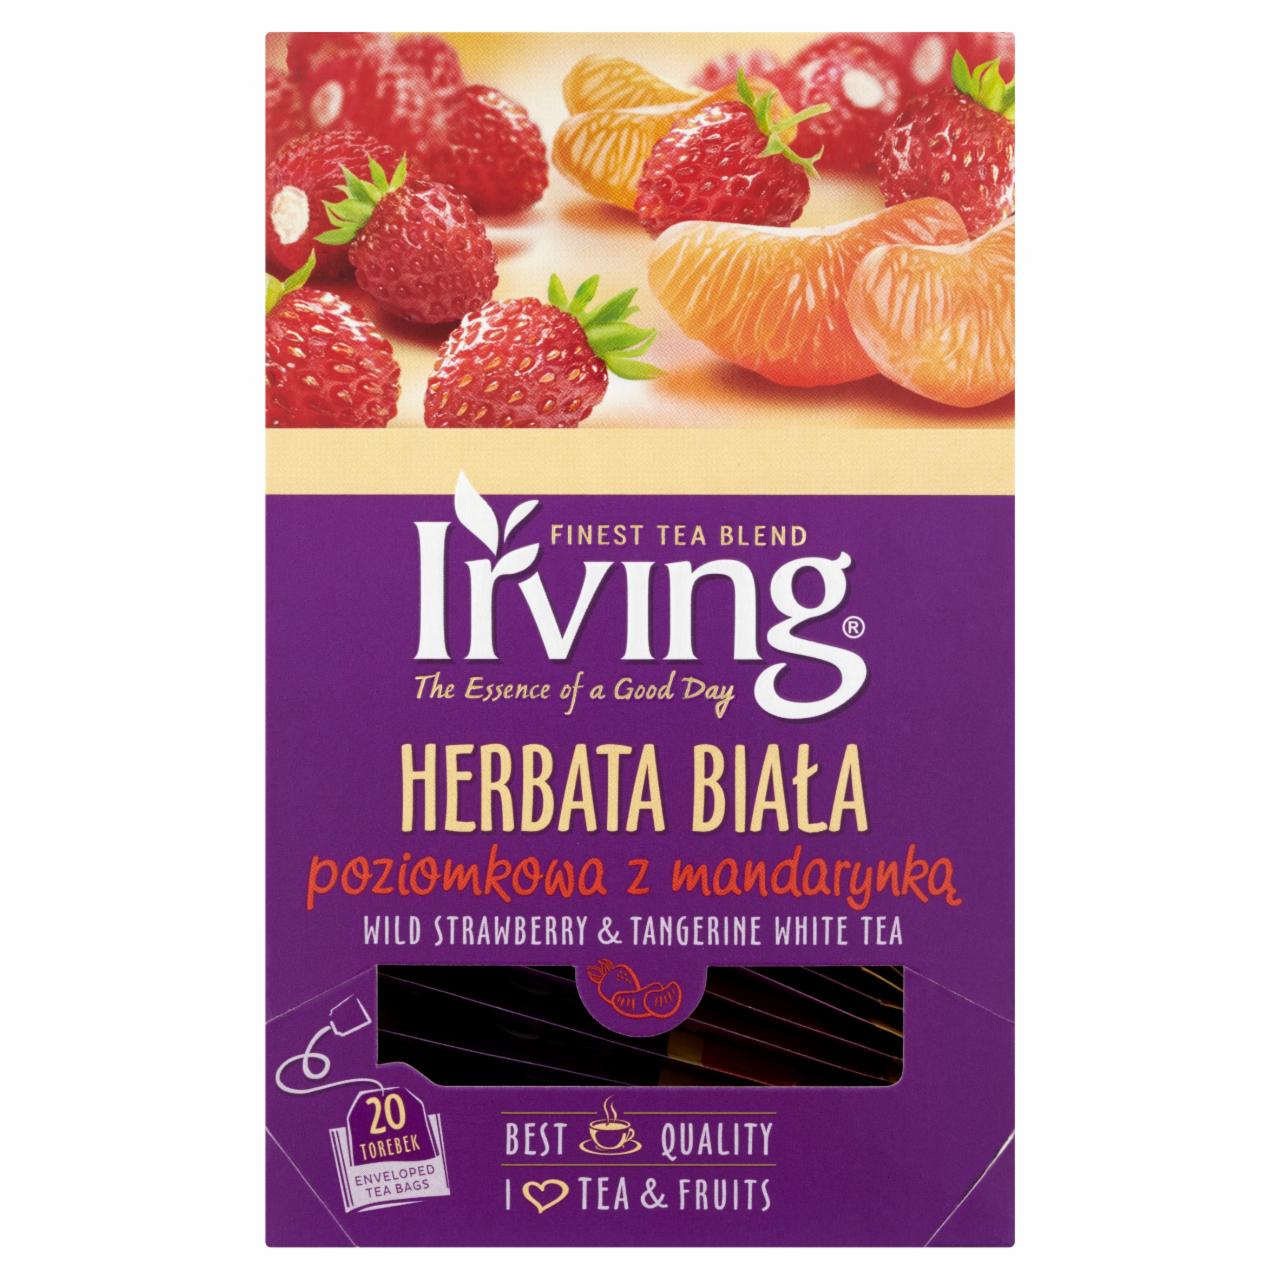 Zdjęcia - Herbata biała poziomkowa z mandarynką Irving